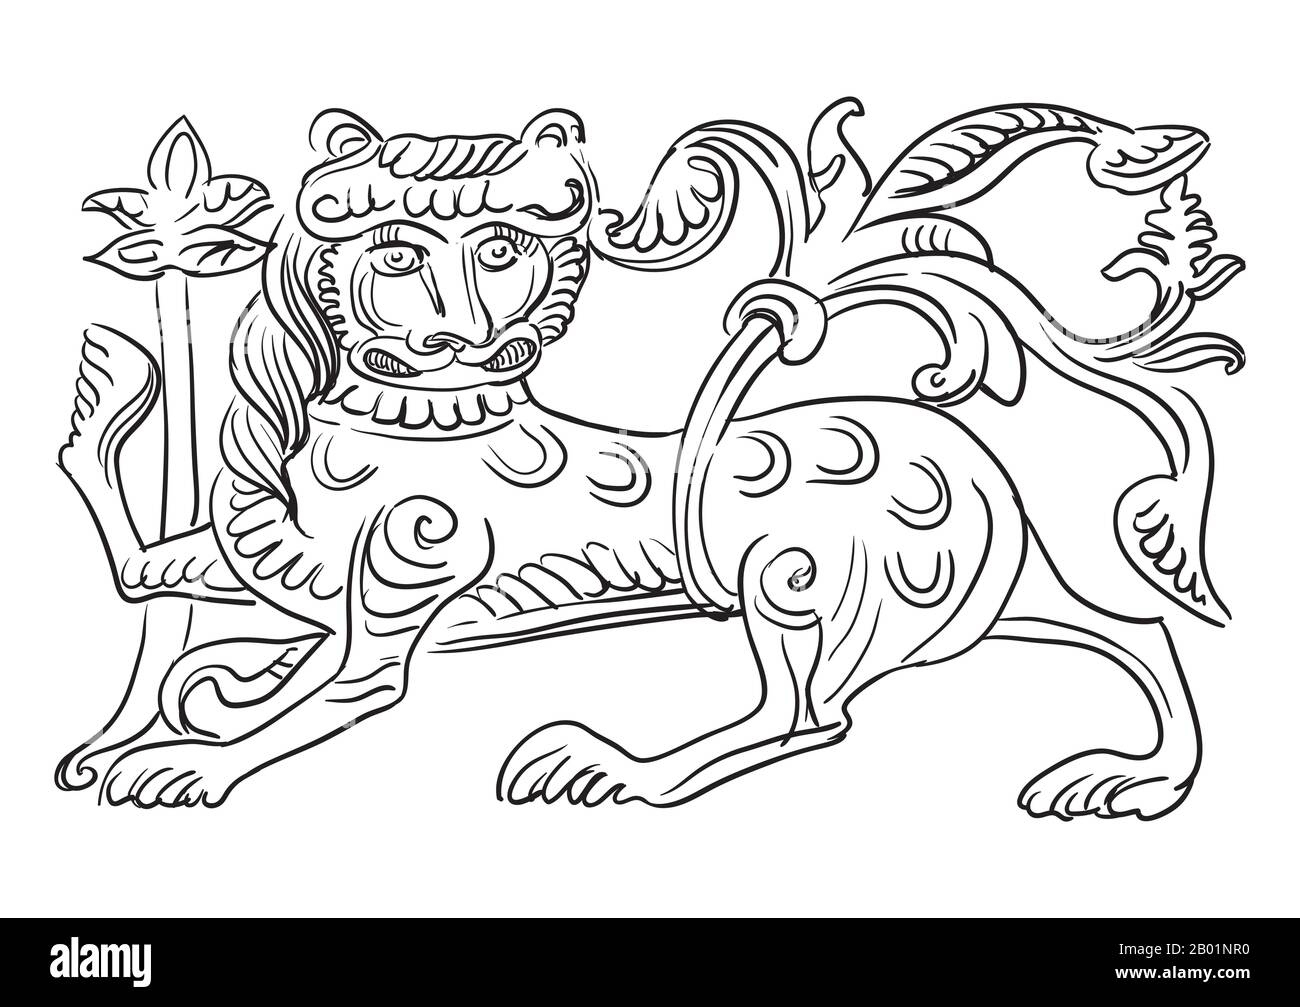 Esquisse d'un détail architectural en forme de lion décoratif. Illustration du dessin vectoriel en couleur noire isolée sur fond blanc. Gra Illustration de Vecteur